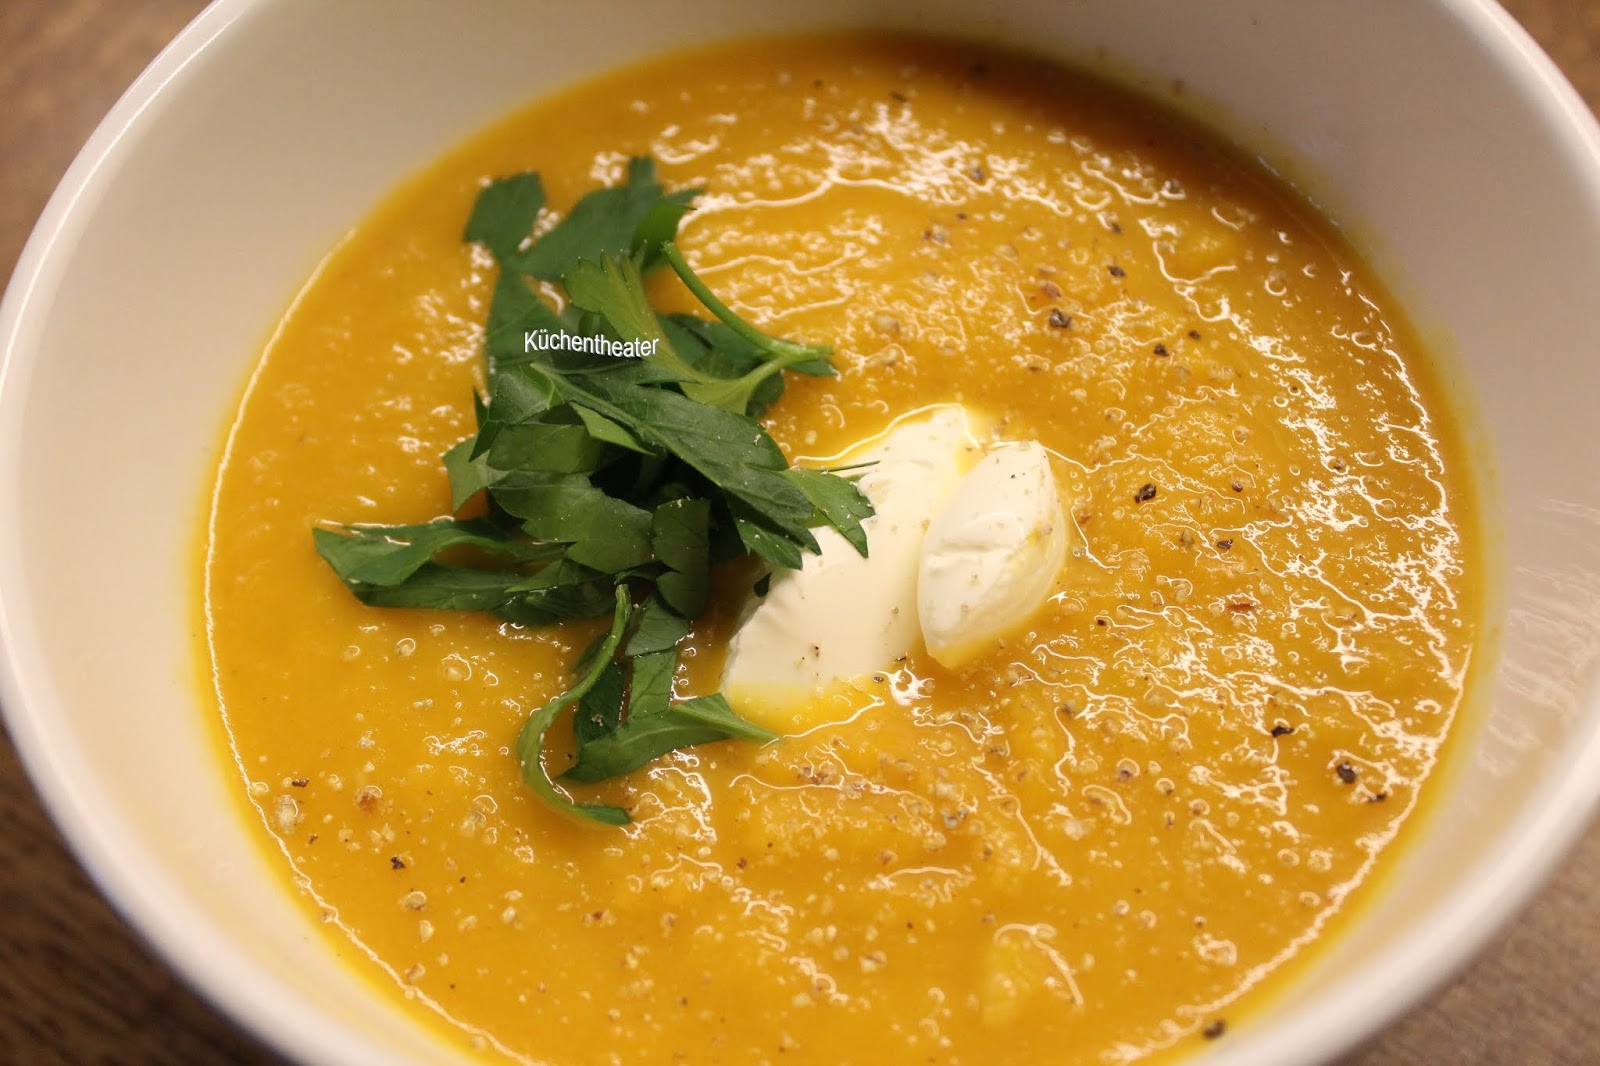 Küchentheater: Butternut-Kürbissuppe mit Chili und Ingwer